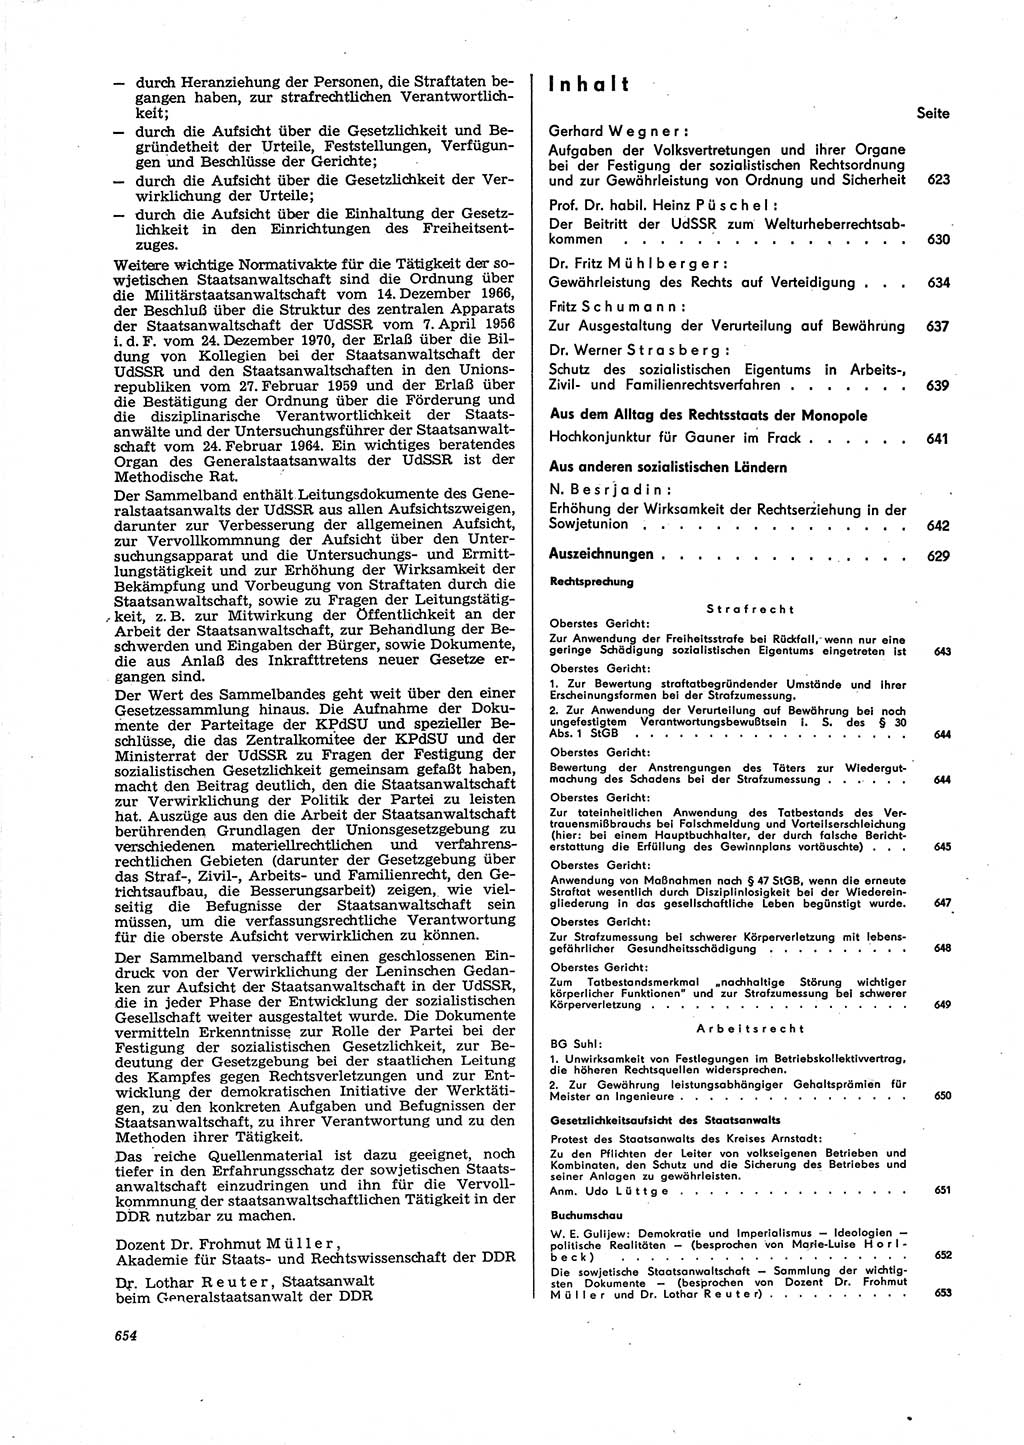 Neue Justiz (NJ), Zeitschrift für Recht und Rechtswissenschaft [Deutsche Demokratische Republik (DDR)], 27. Jahrgang 1973, Seite 654 (NJ DDR 1973, S. 654)